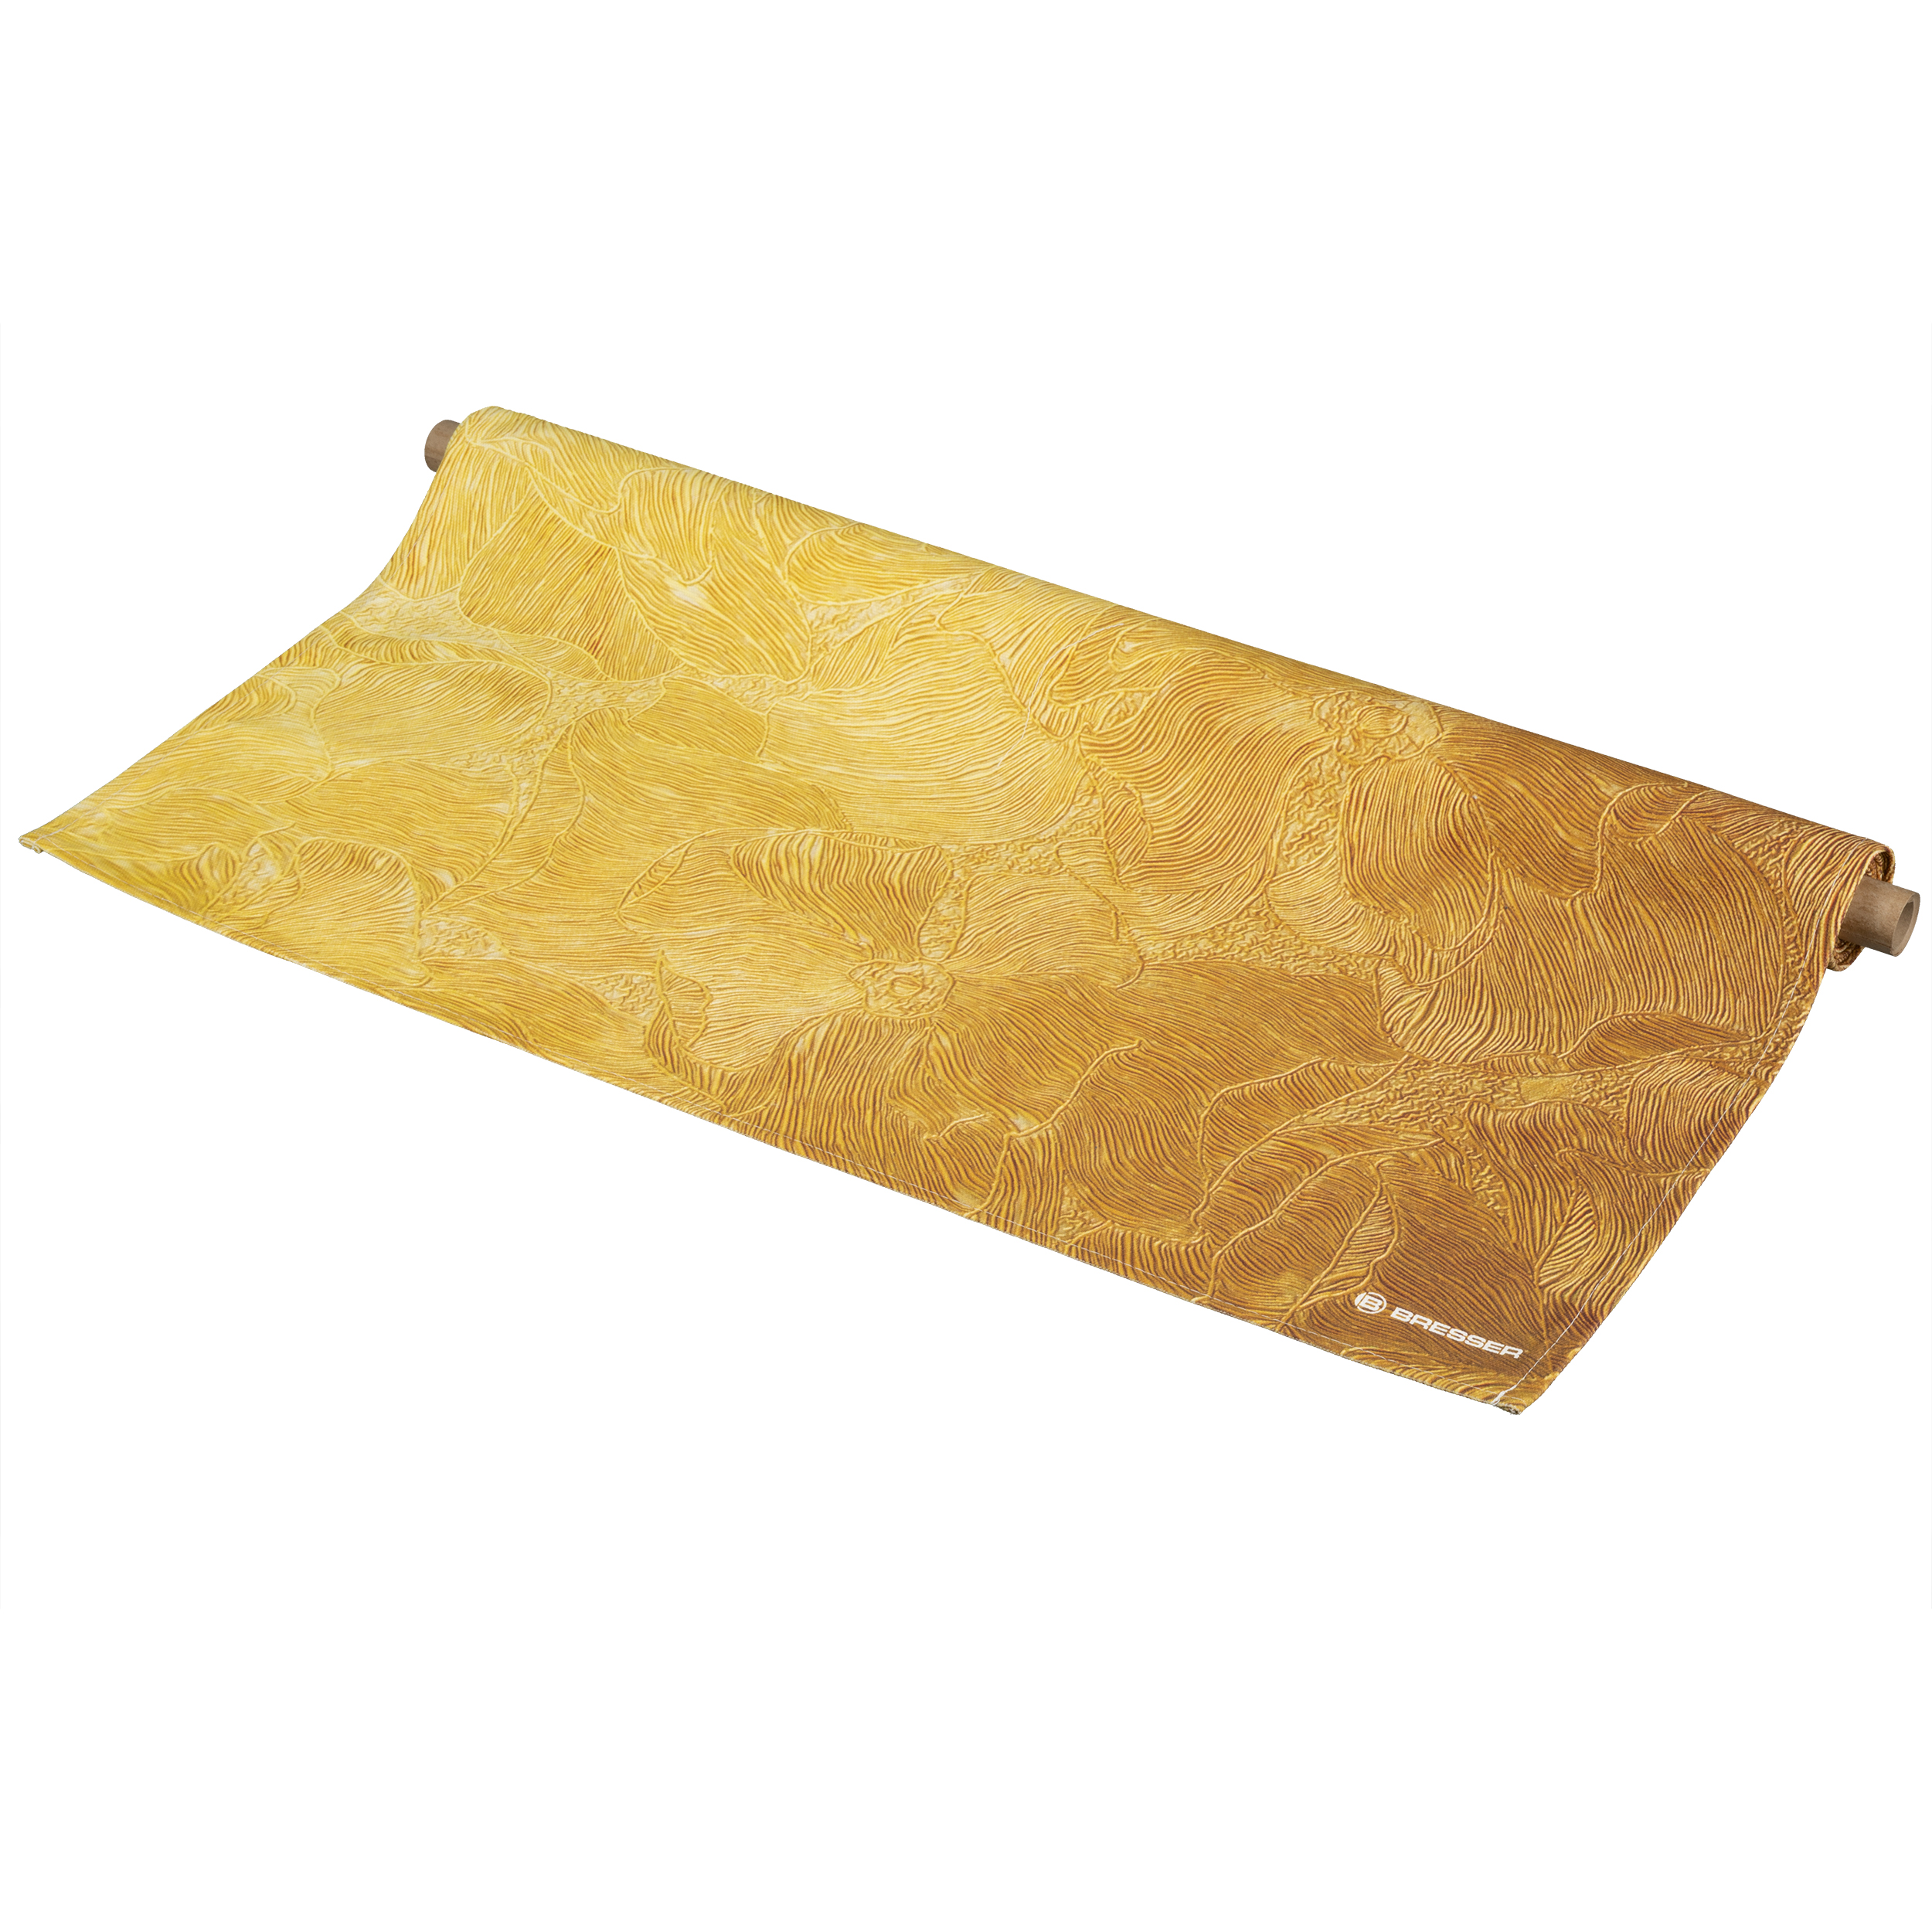 BRESSER Background Cloth with Motif 80 x 120 cm - Golden Flower